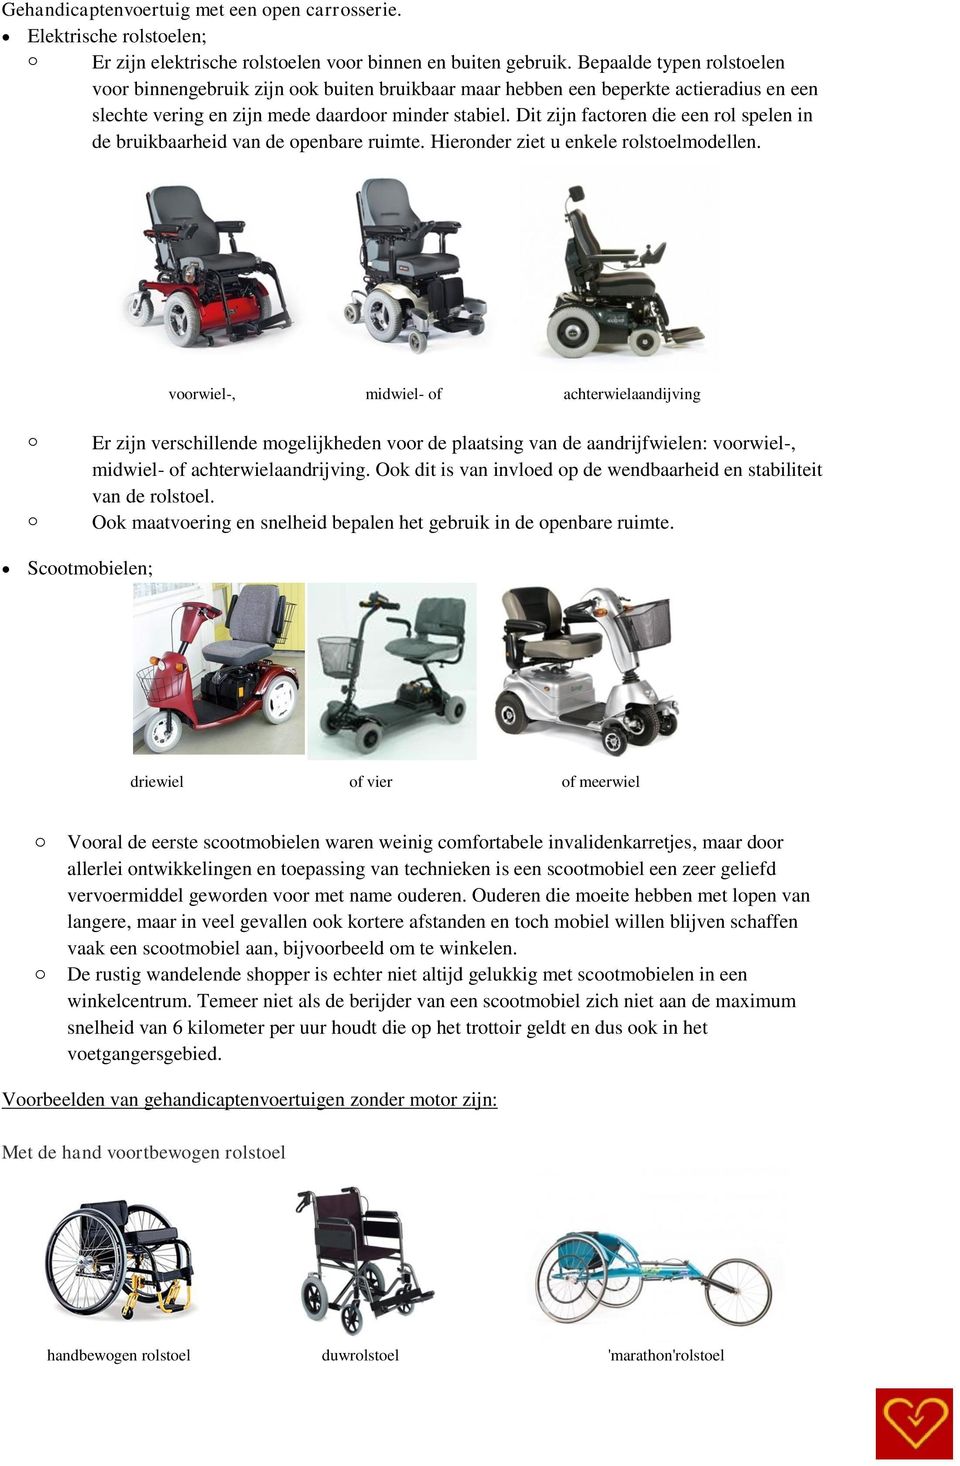 Dit zijn factoren die een rol spelen in de bruikbaarheid van de openbare ruimte. Hieronder ziet u enkele rolstoelmodellen.